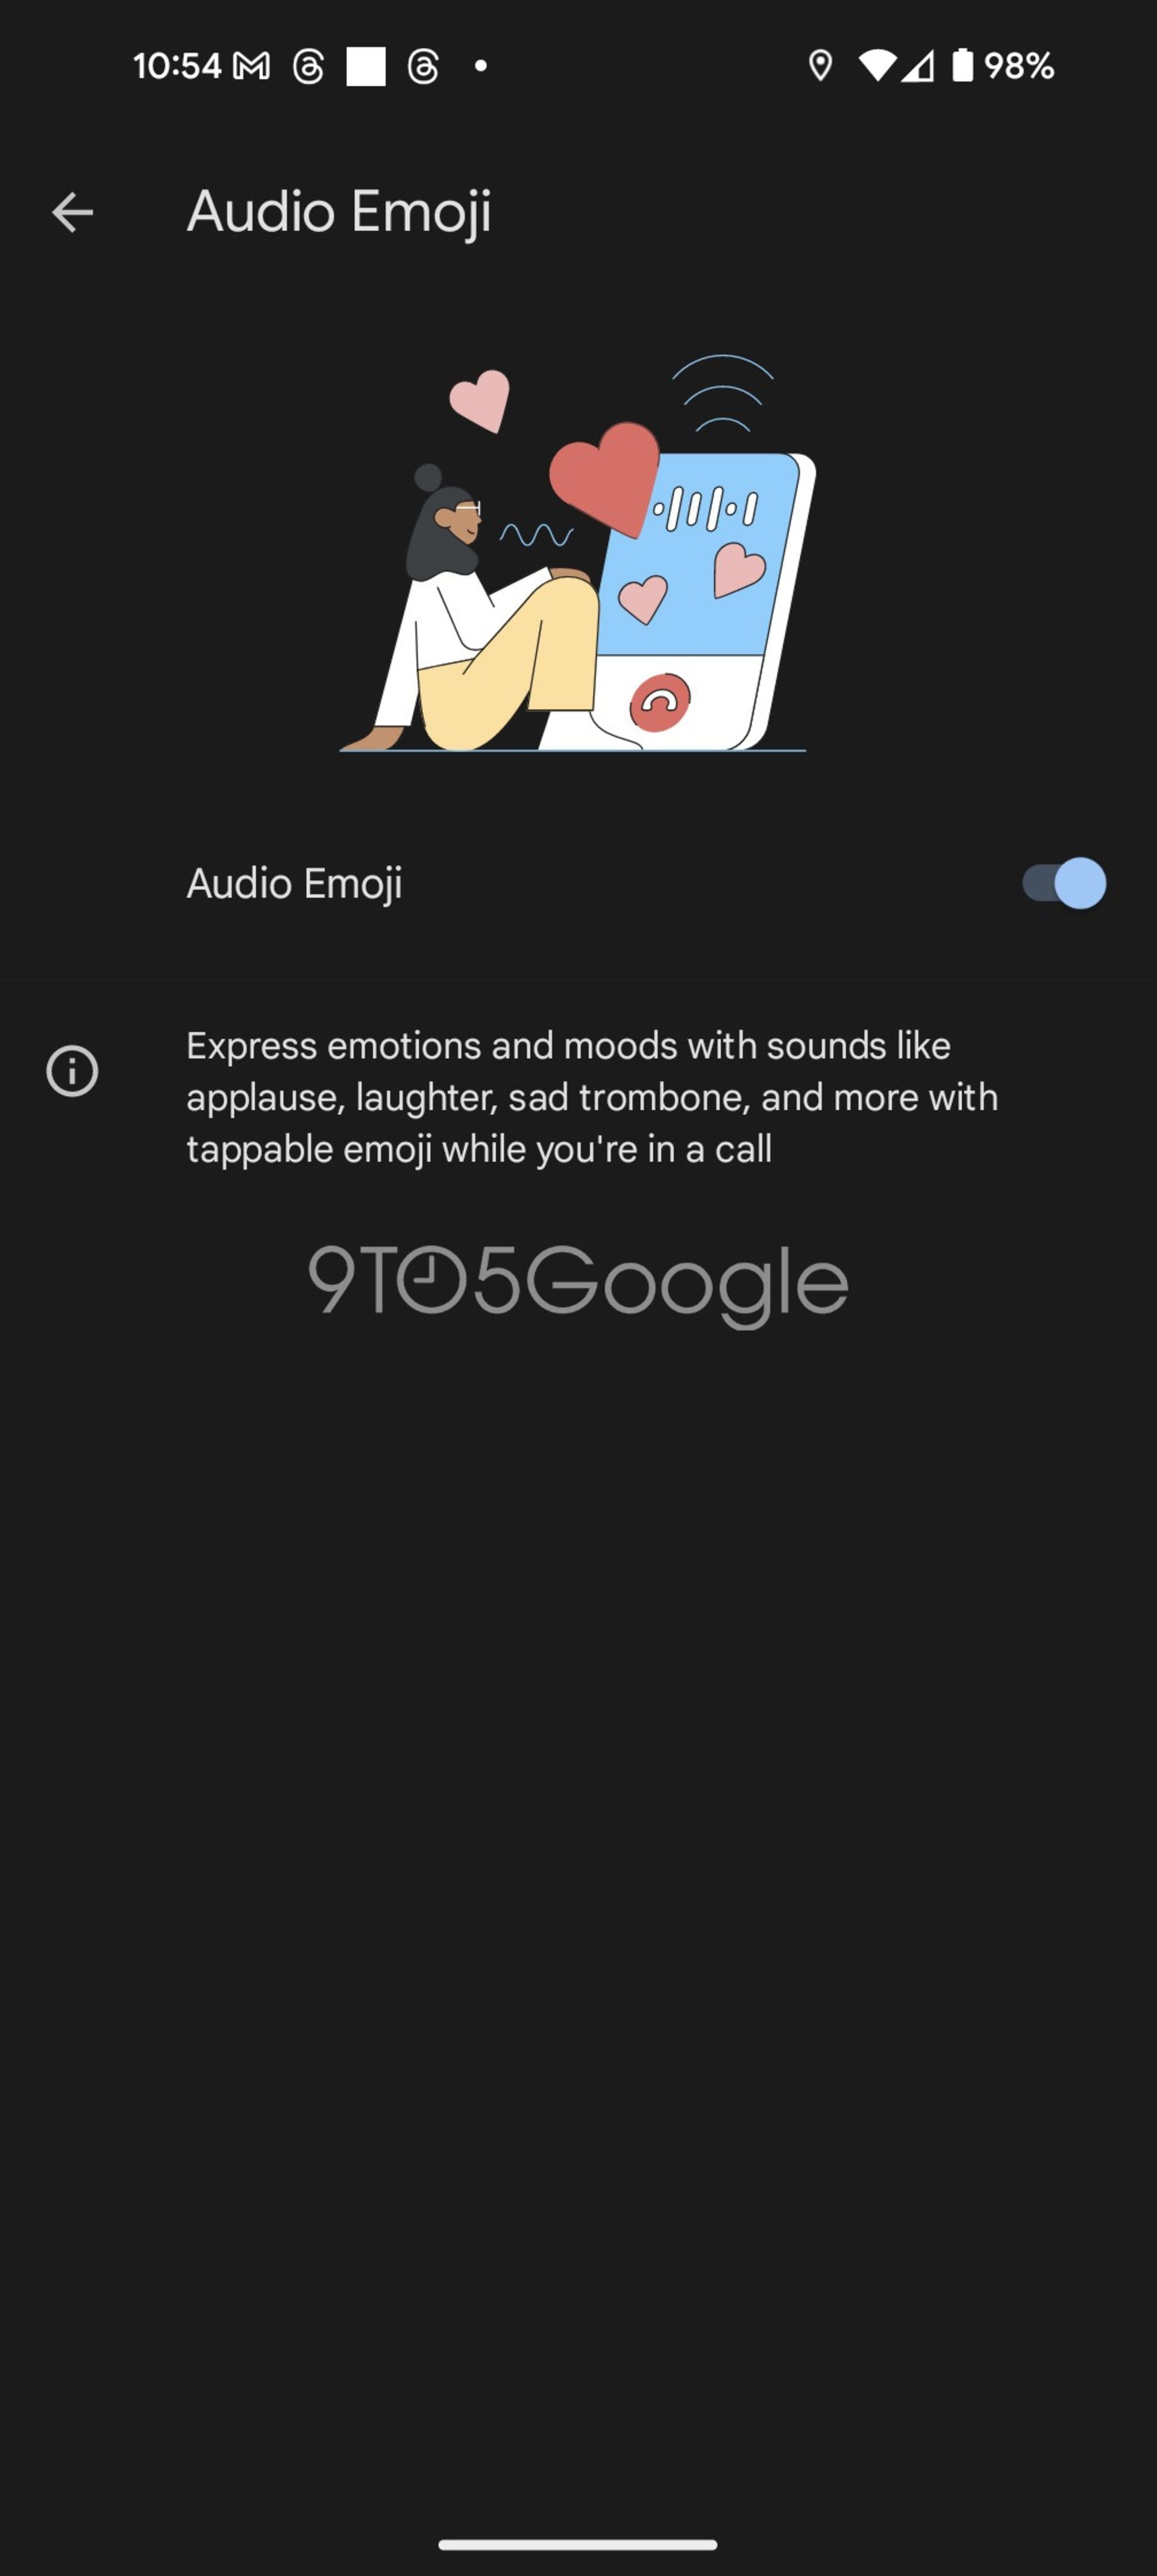 فعال کردن ایموجی صوتی در اپلیکیشن تماس گوگل 